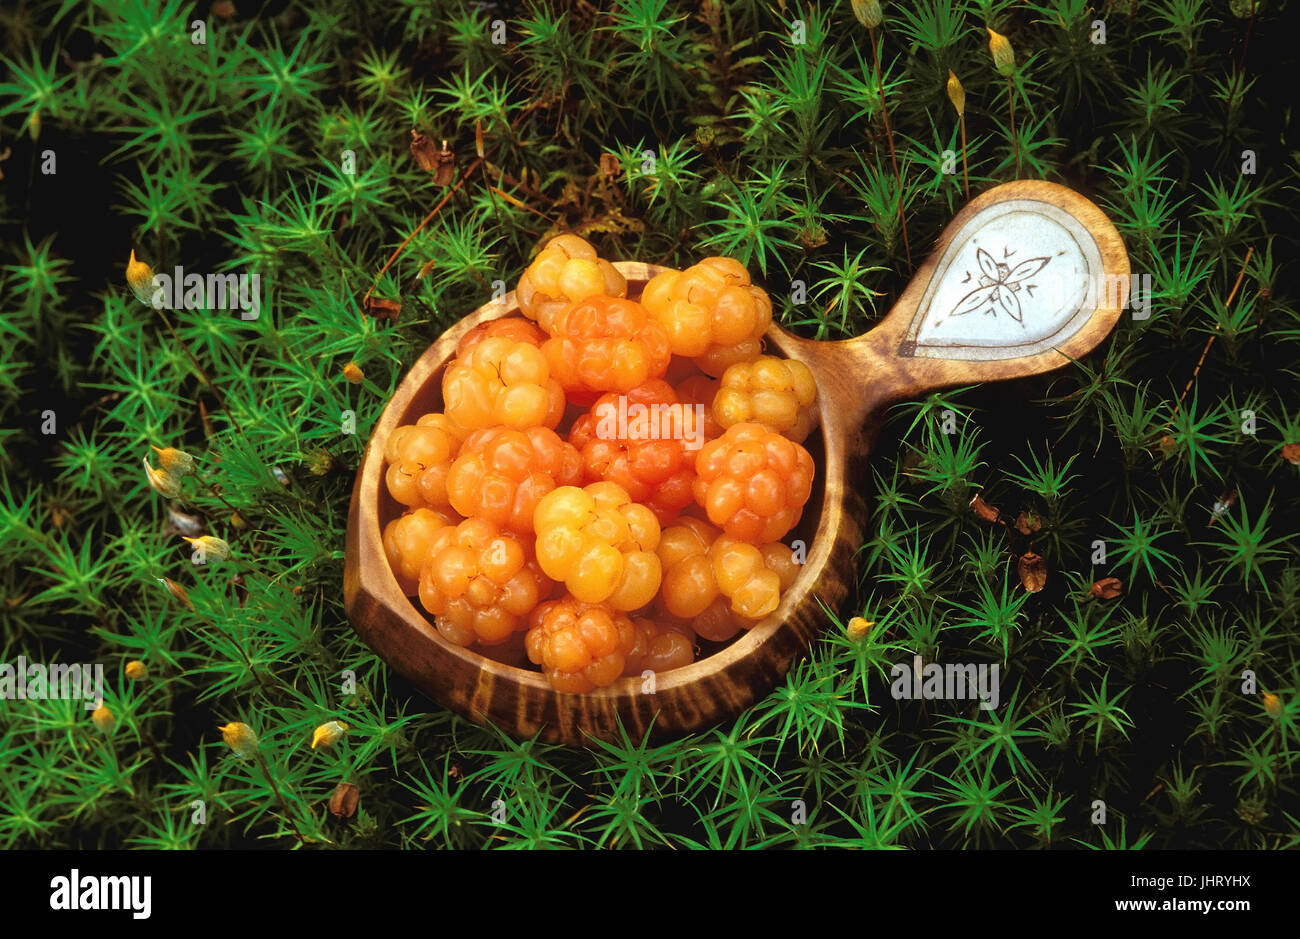 'Moltebeeren moras, la turba, la turba, la zarzamora (Rubus chamaemorus) en un recipiente para beber samischen artesanal de abedul con inserto de pensionista's Foto de stock